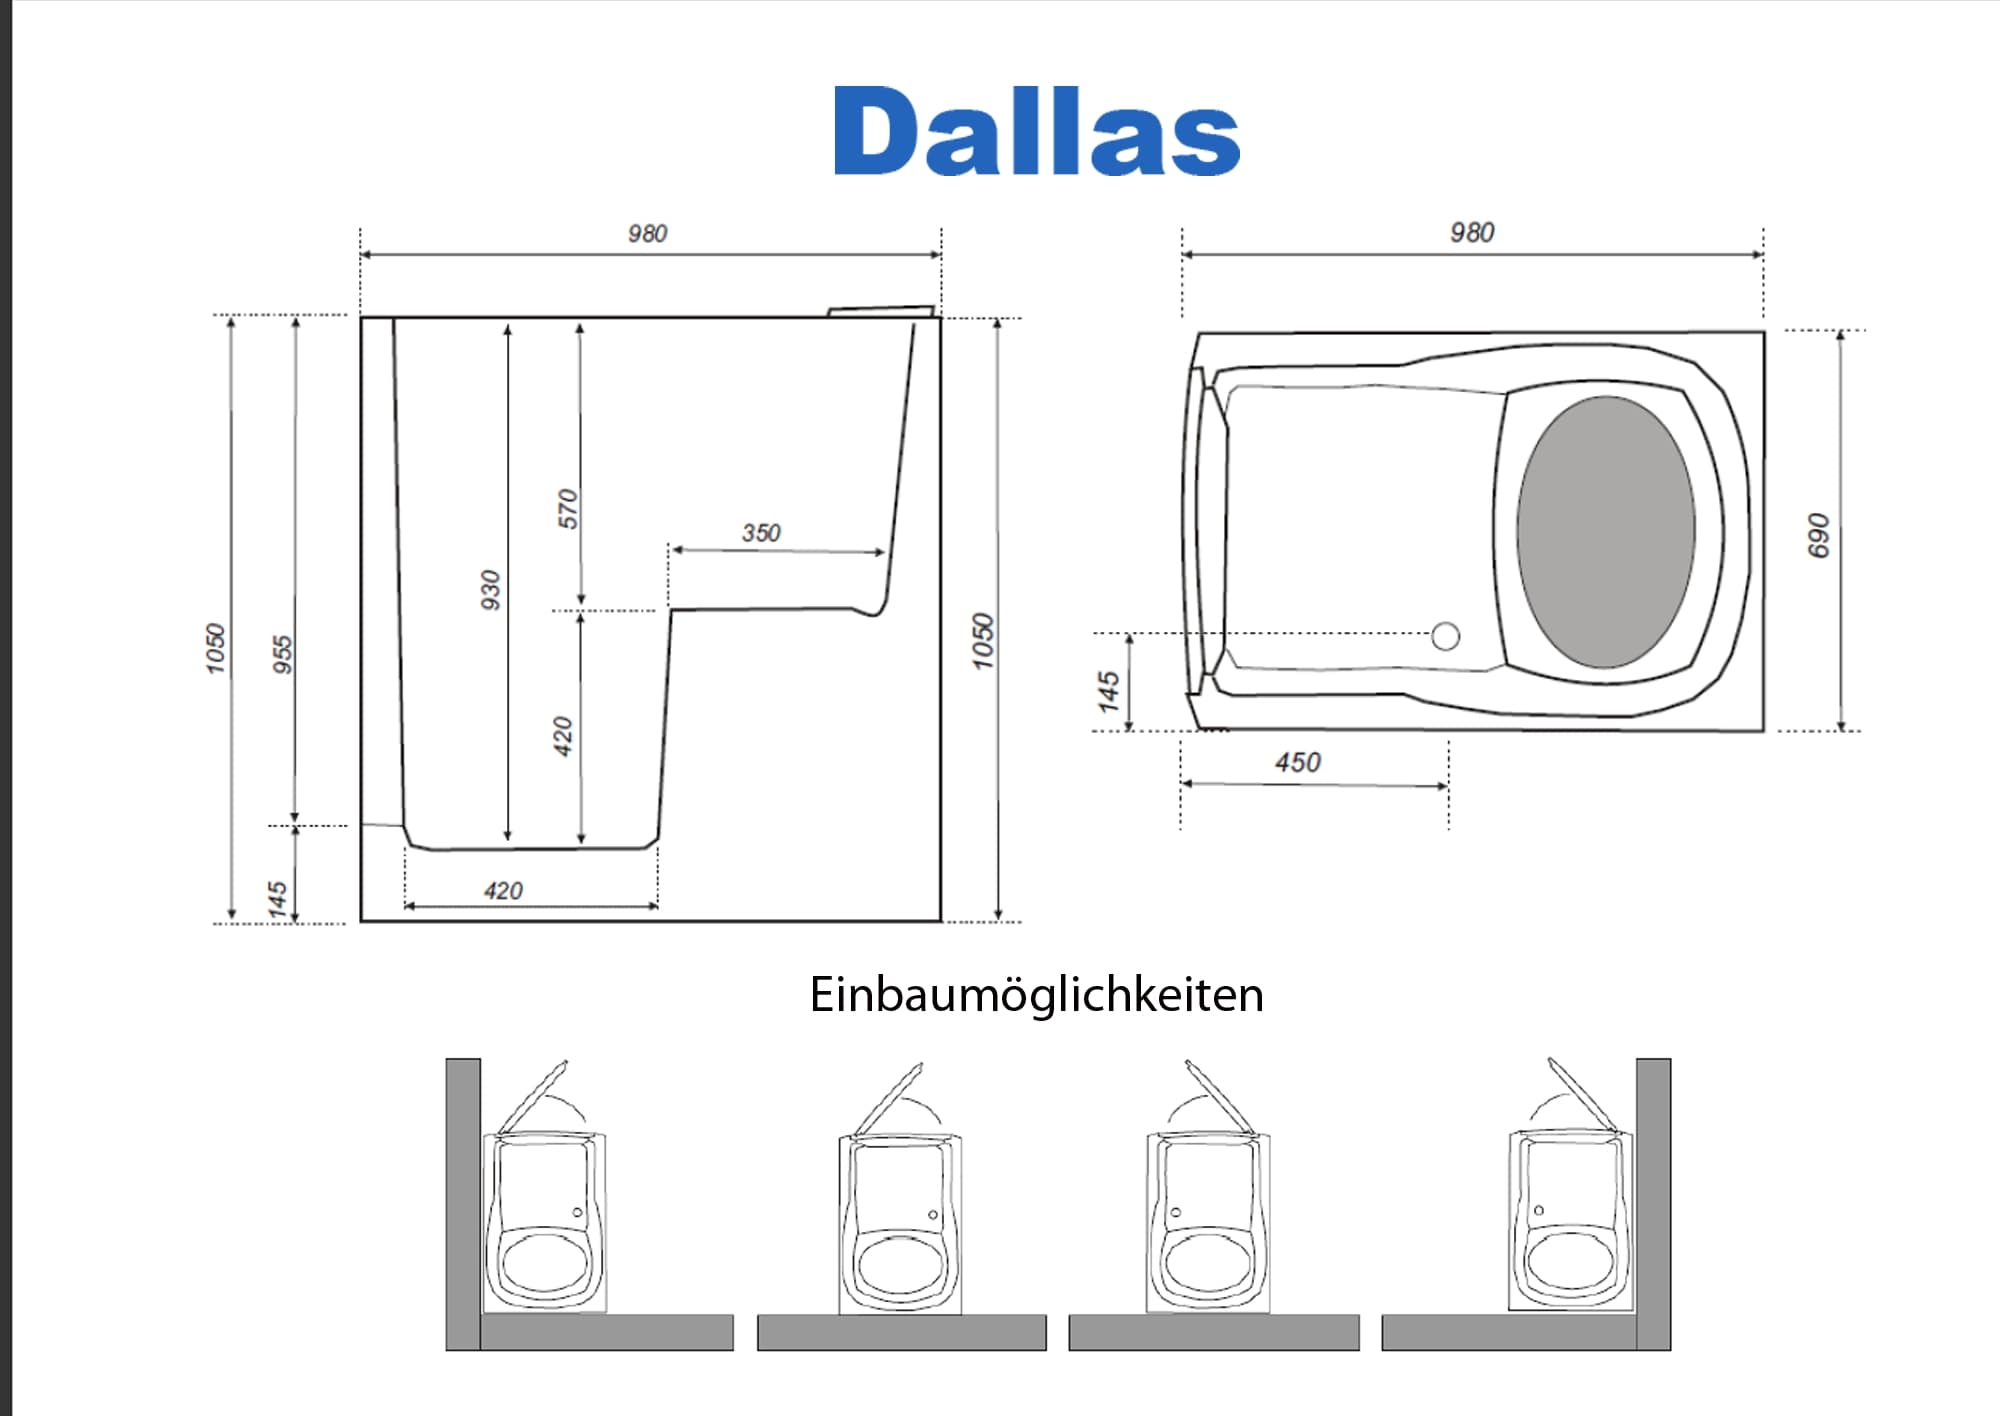 Badewanne mit Tür Einbaubeschreibung Dallas